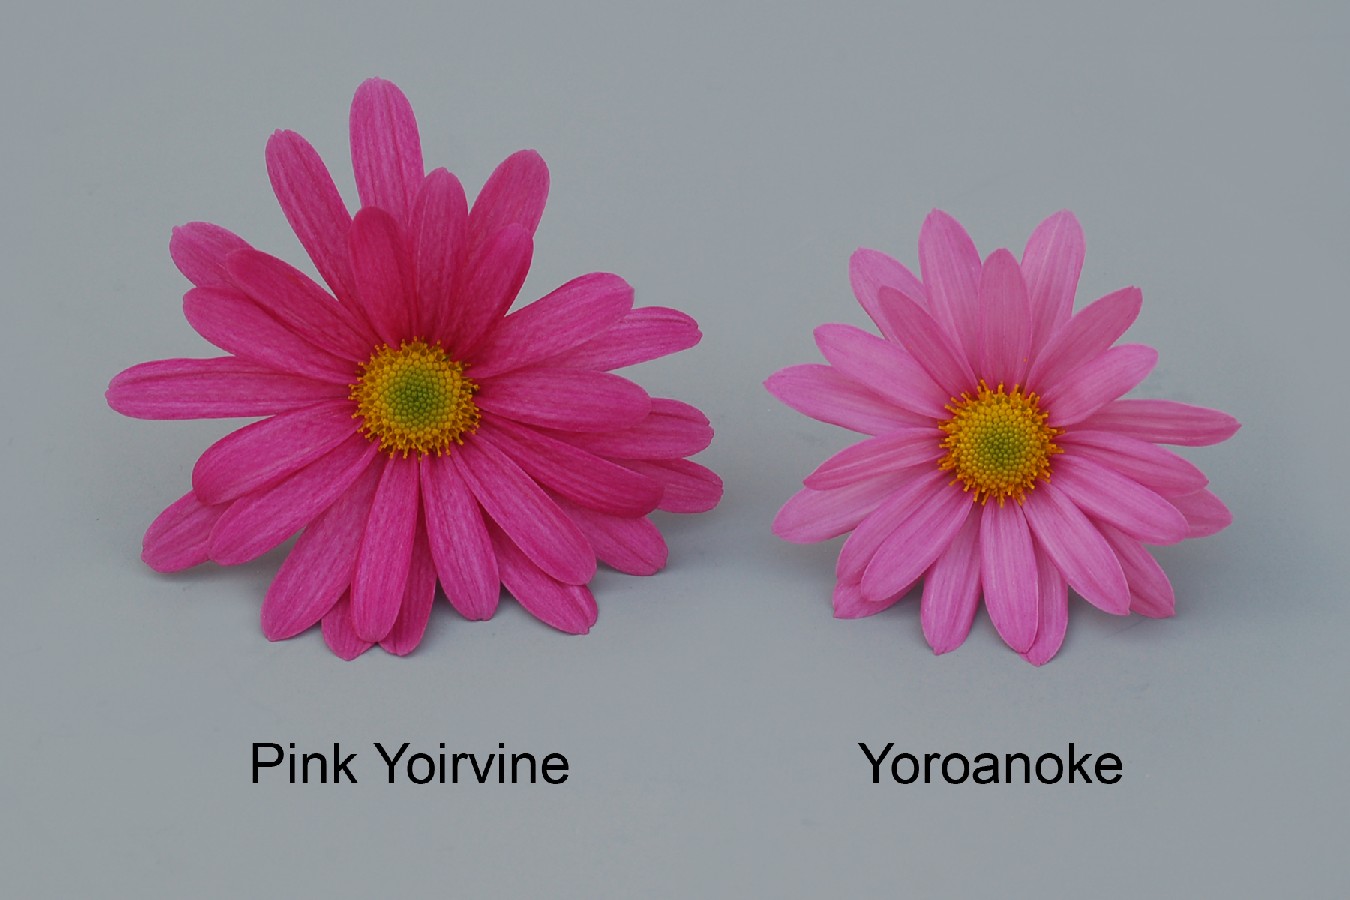 Pink Yoirvine